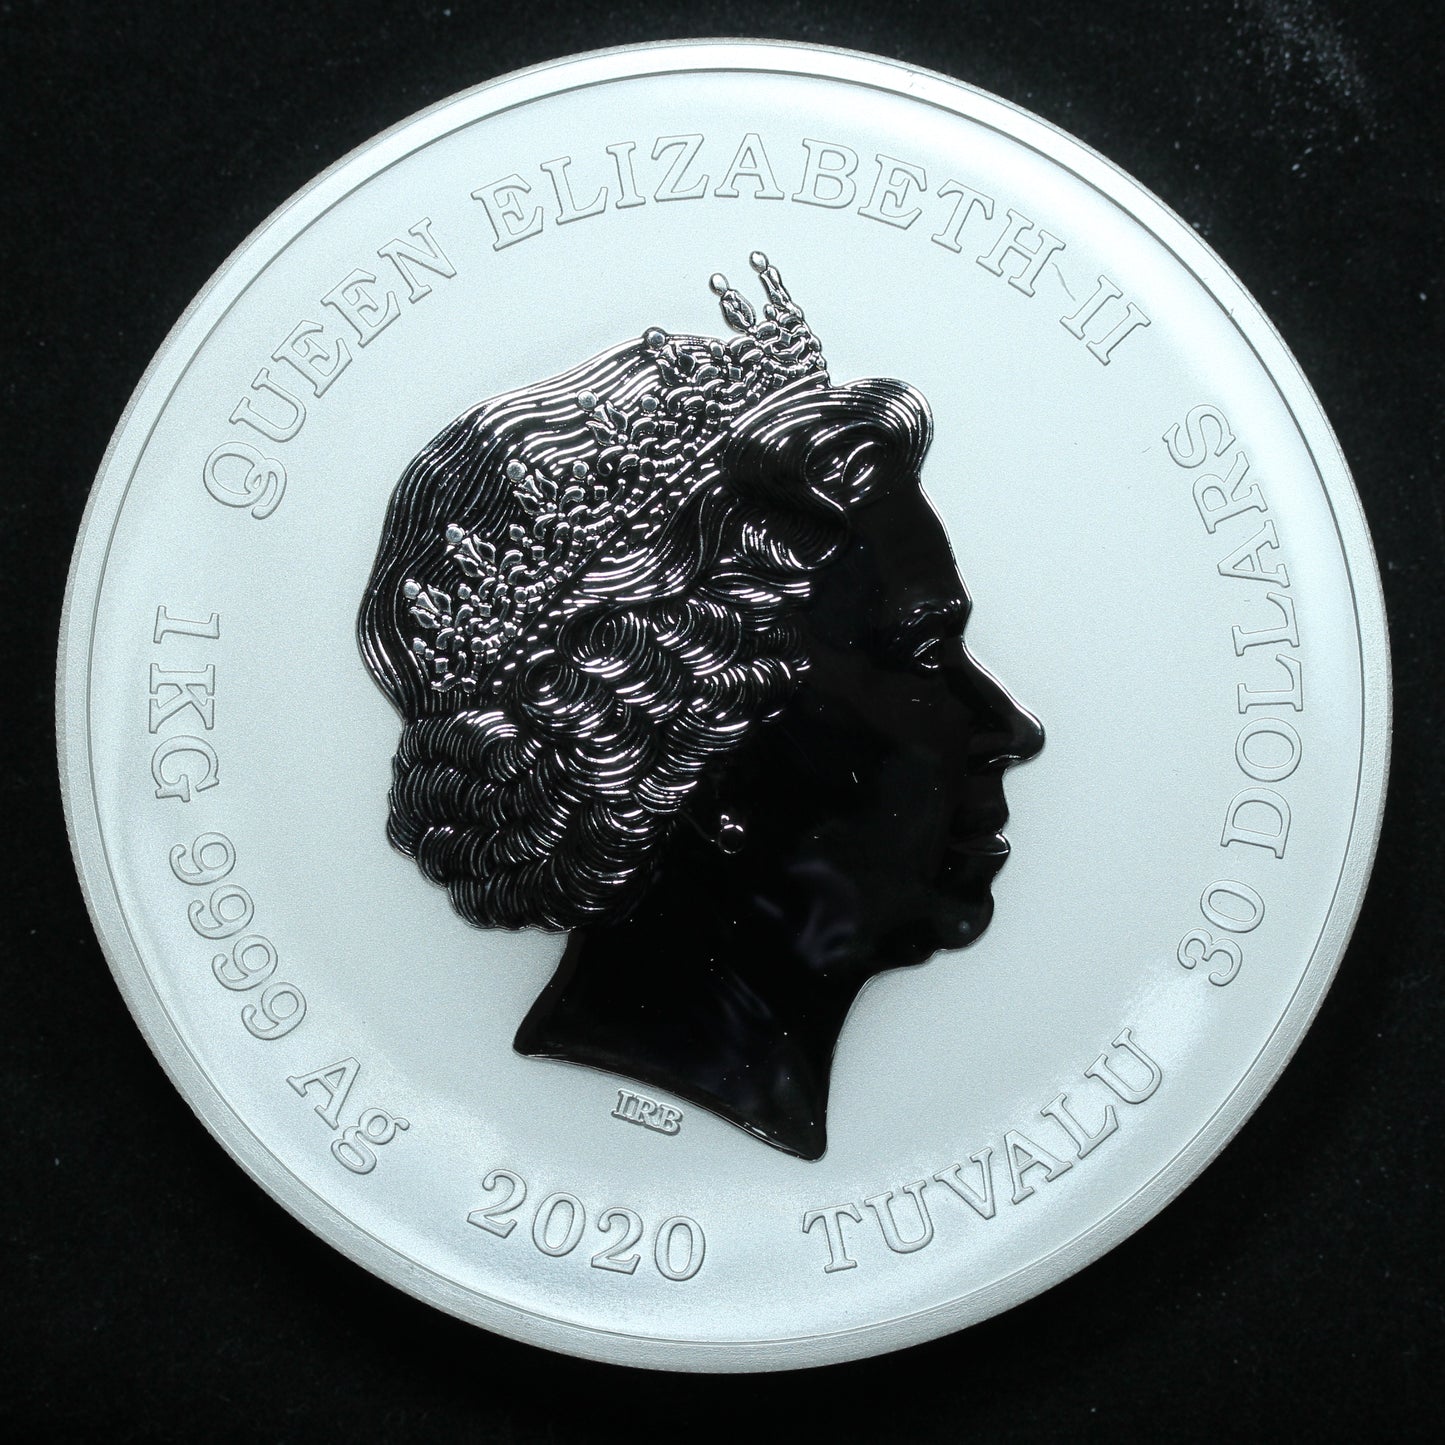 2020 P $30 Iwo Jima 75th Anniversary 1 Kg Kilo Silver Proof Coin w/ Capsule